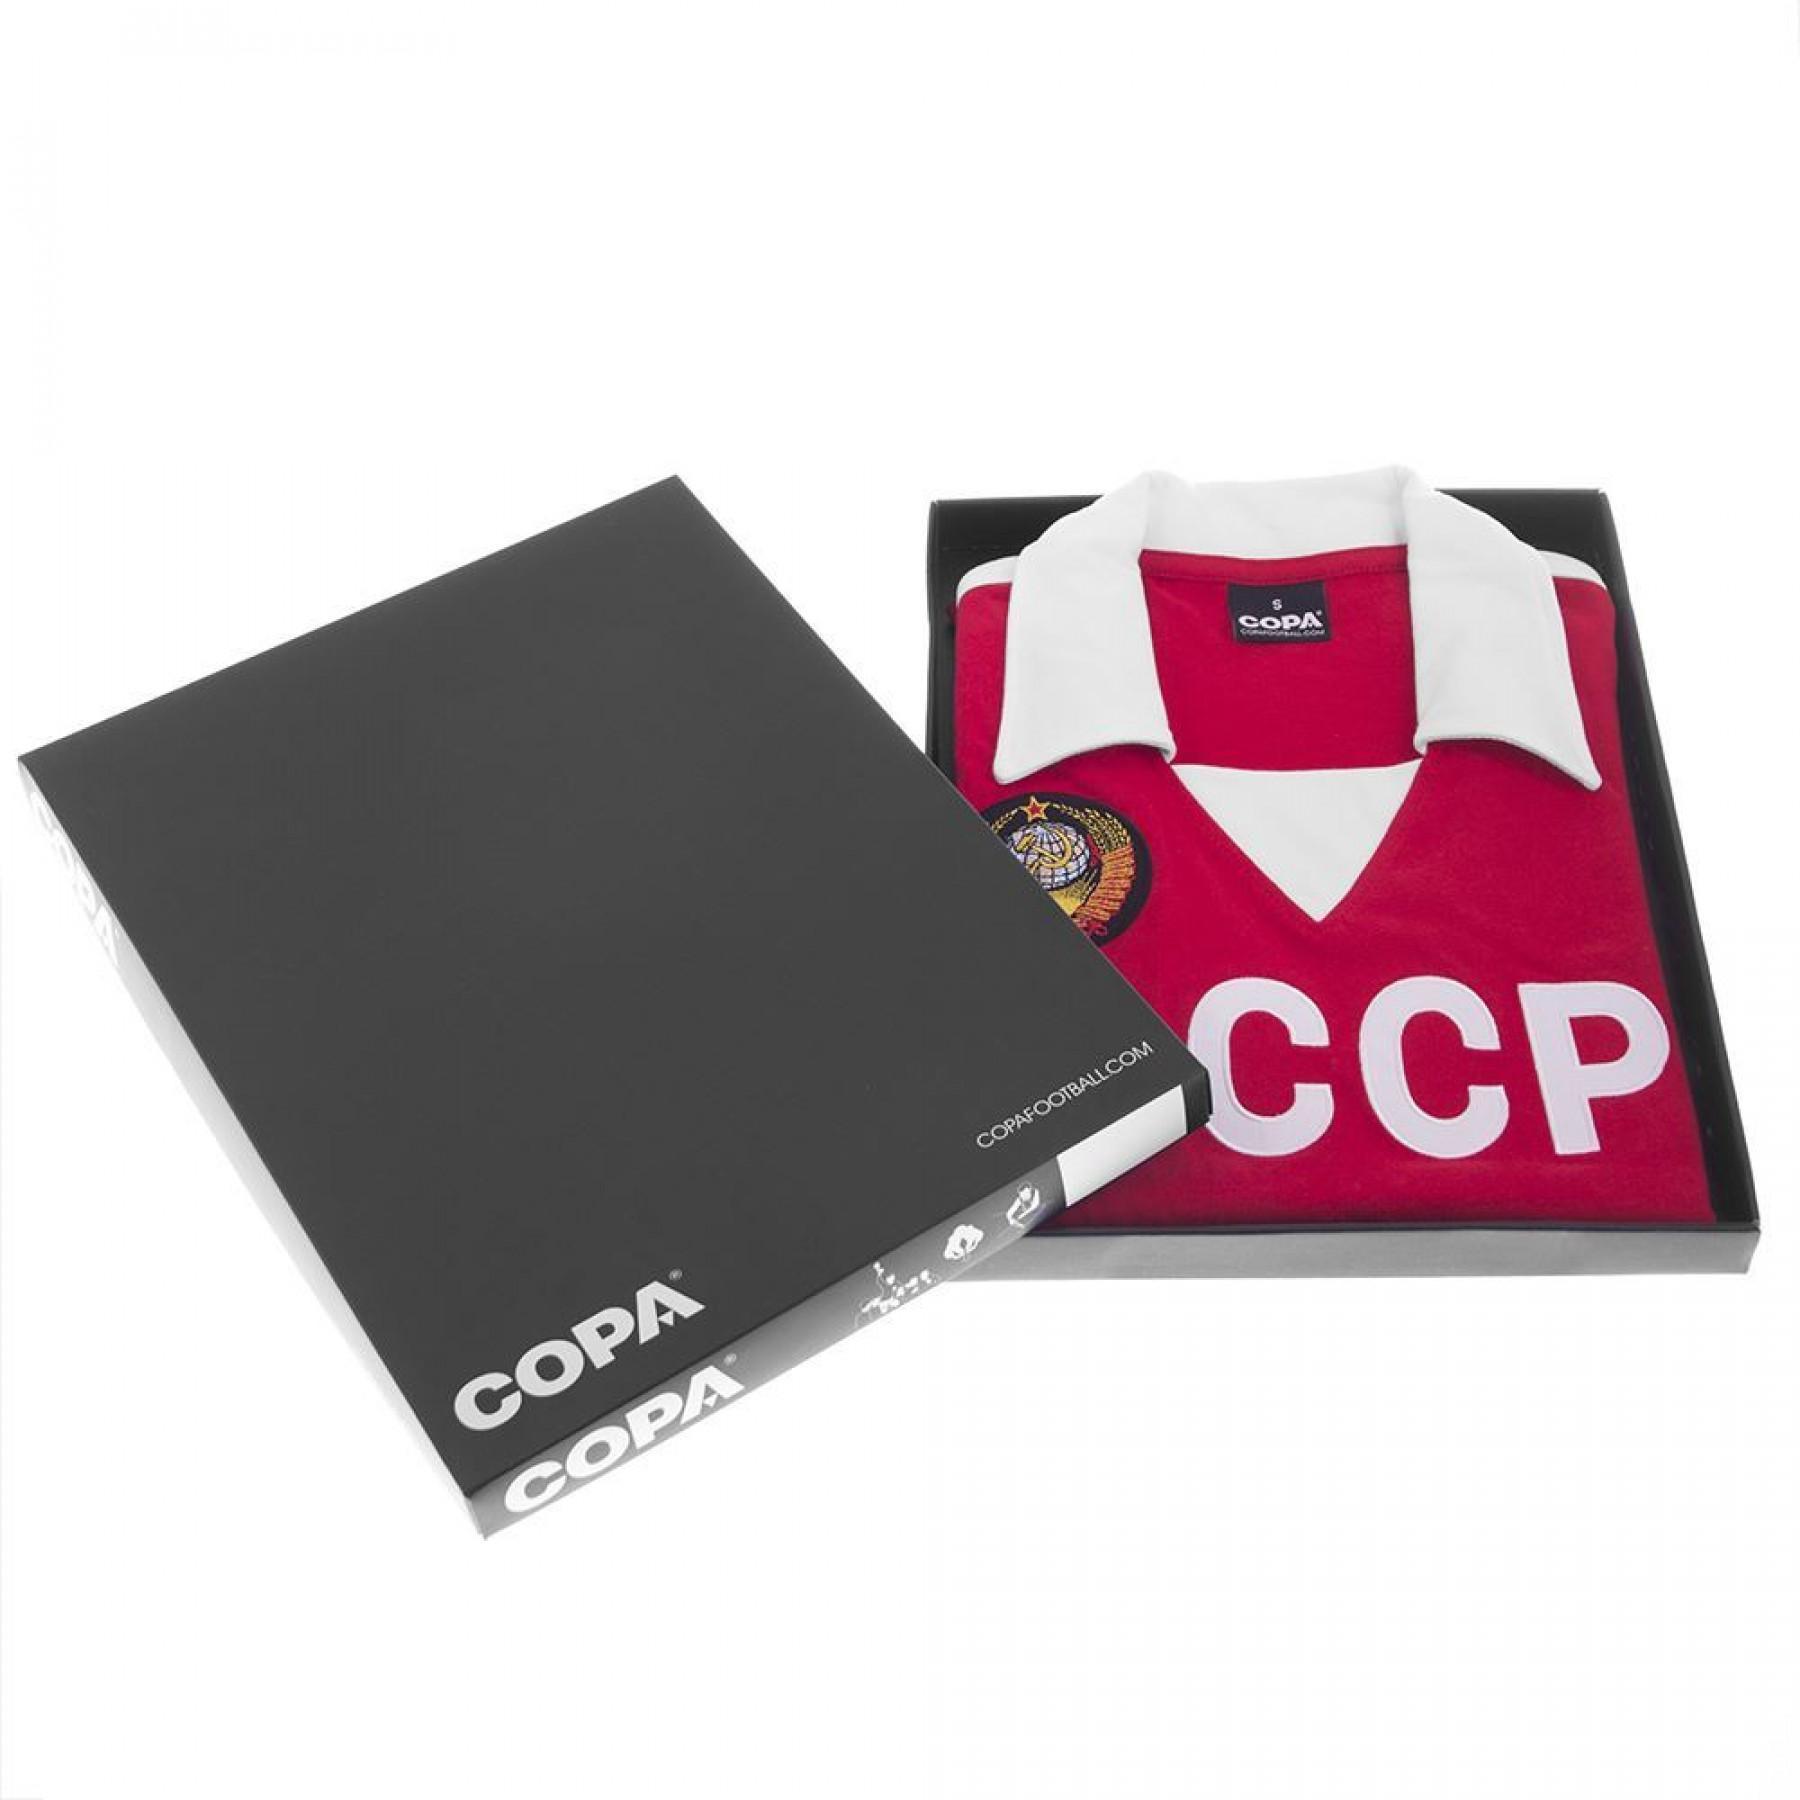 Home jersey Union Soviétique de Football 1980’s